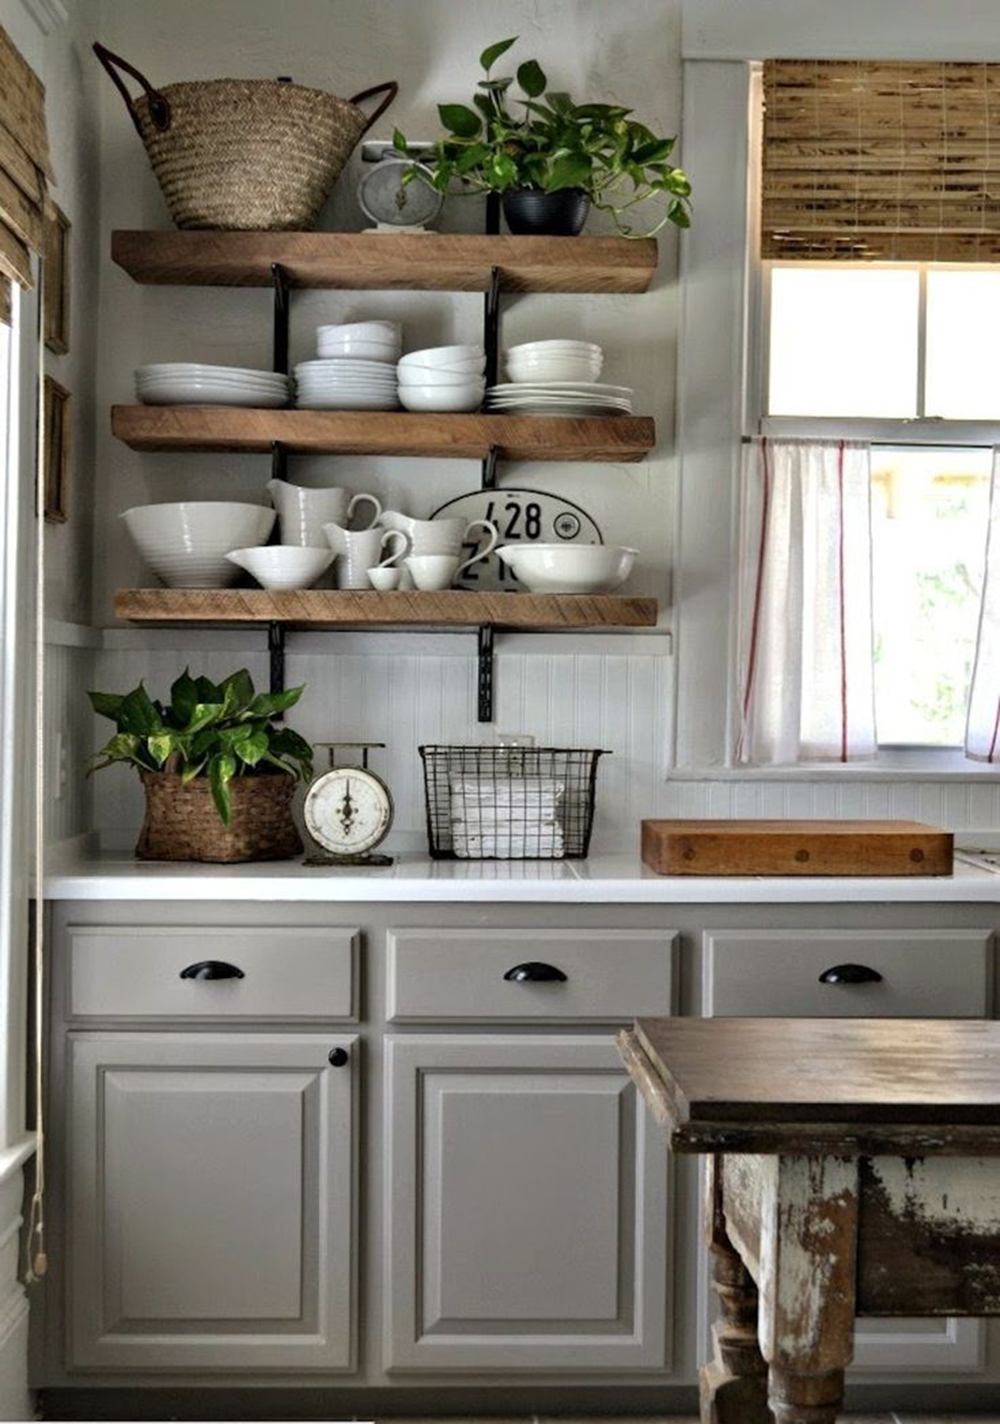 thiết kế bếp nhỏ gọn, đang là xu hướng của những hộ gia đình có diện tích nhỏ.